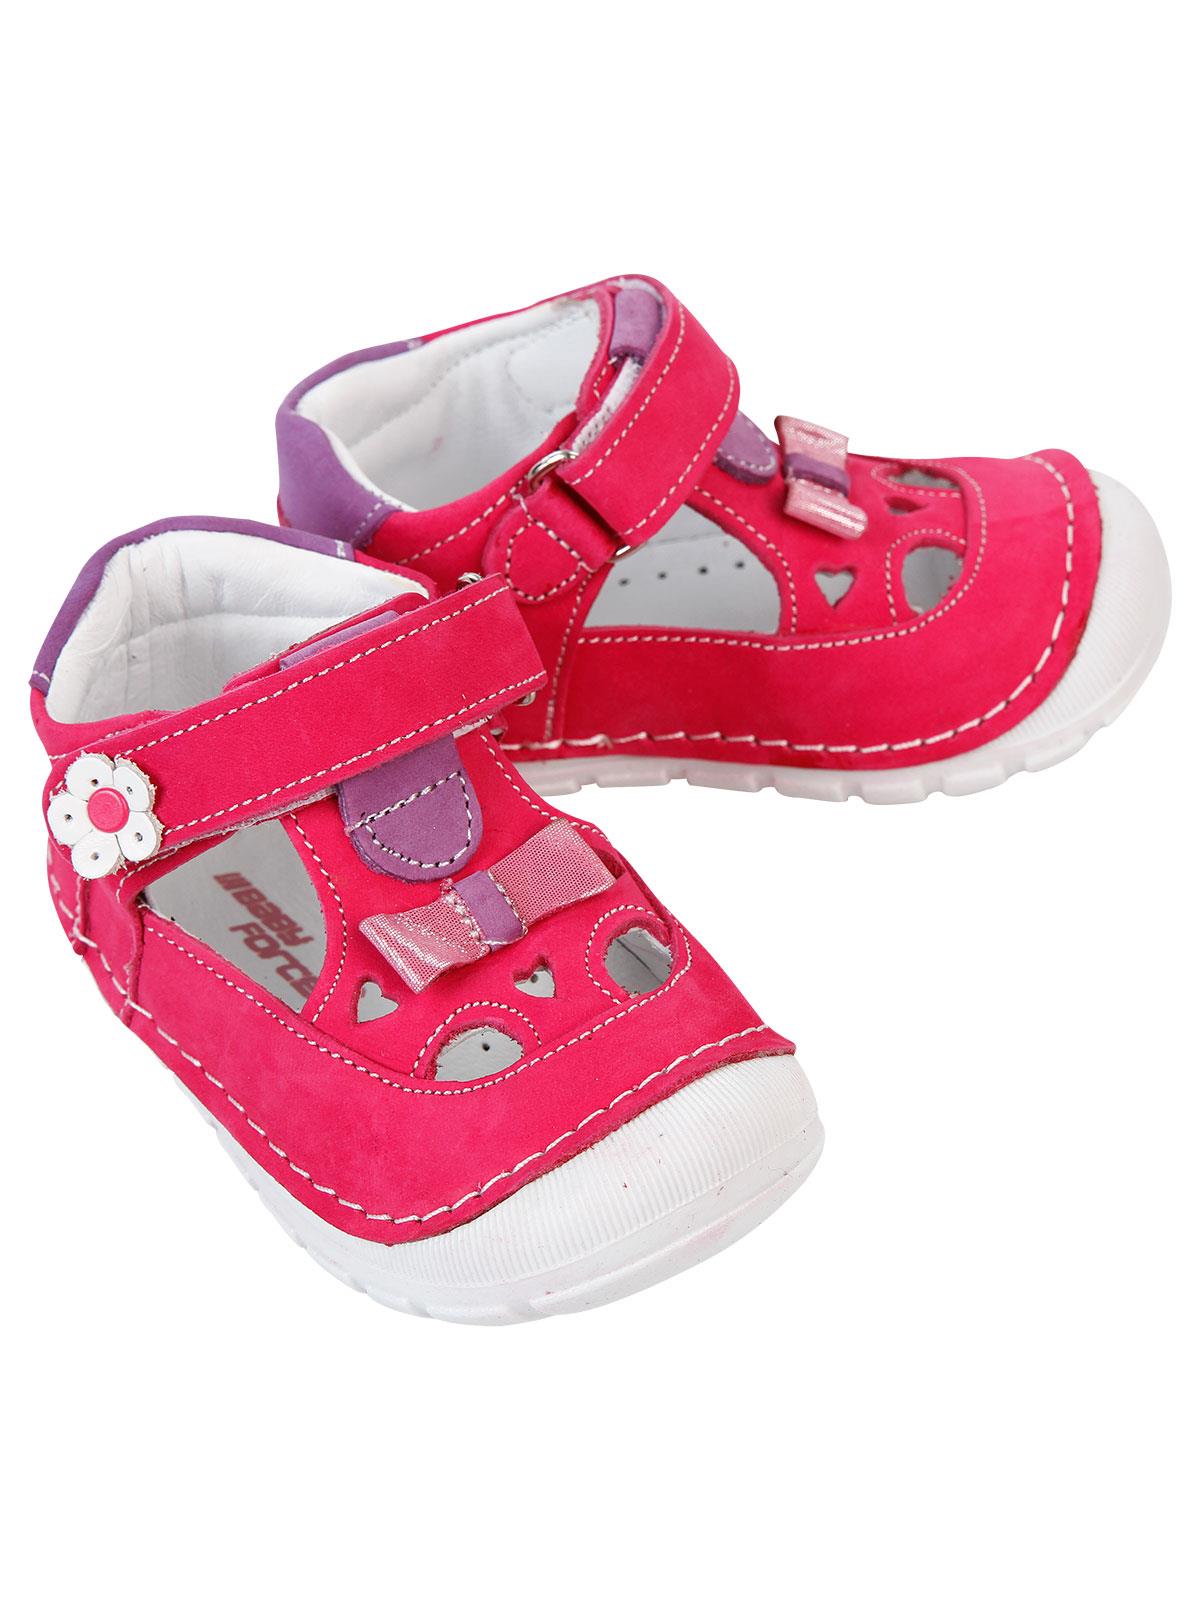 Baby Force Kız Bebek Deri İlkadım Ayakkabısı 18-21 Numara Fuşya